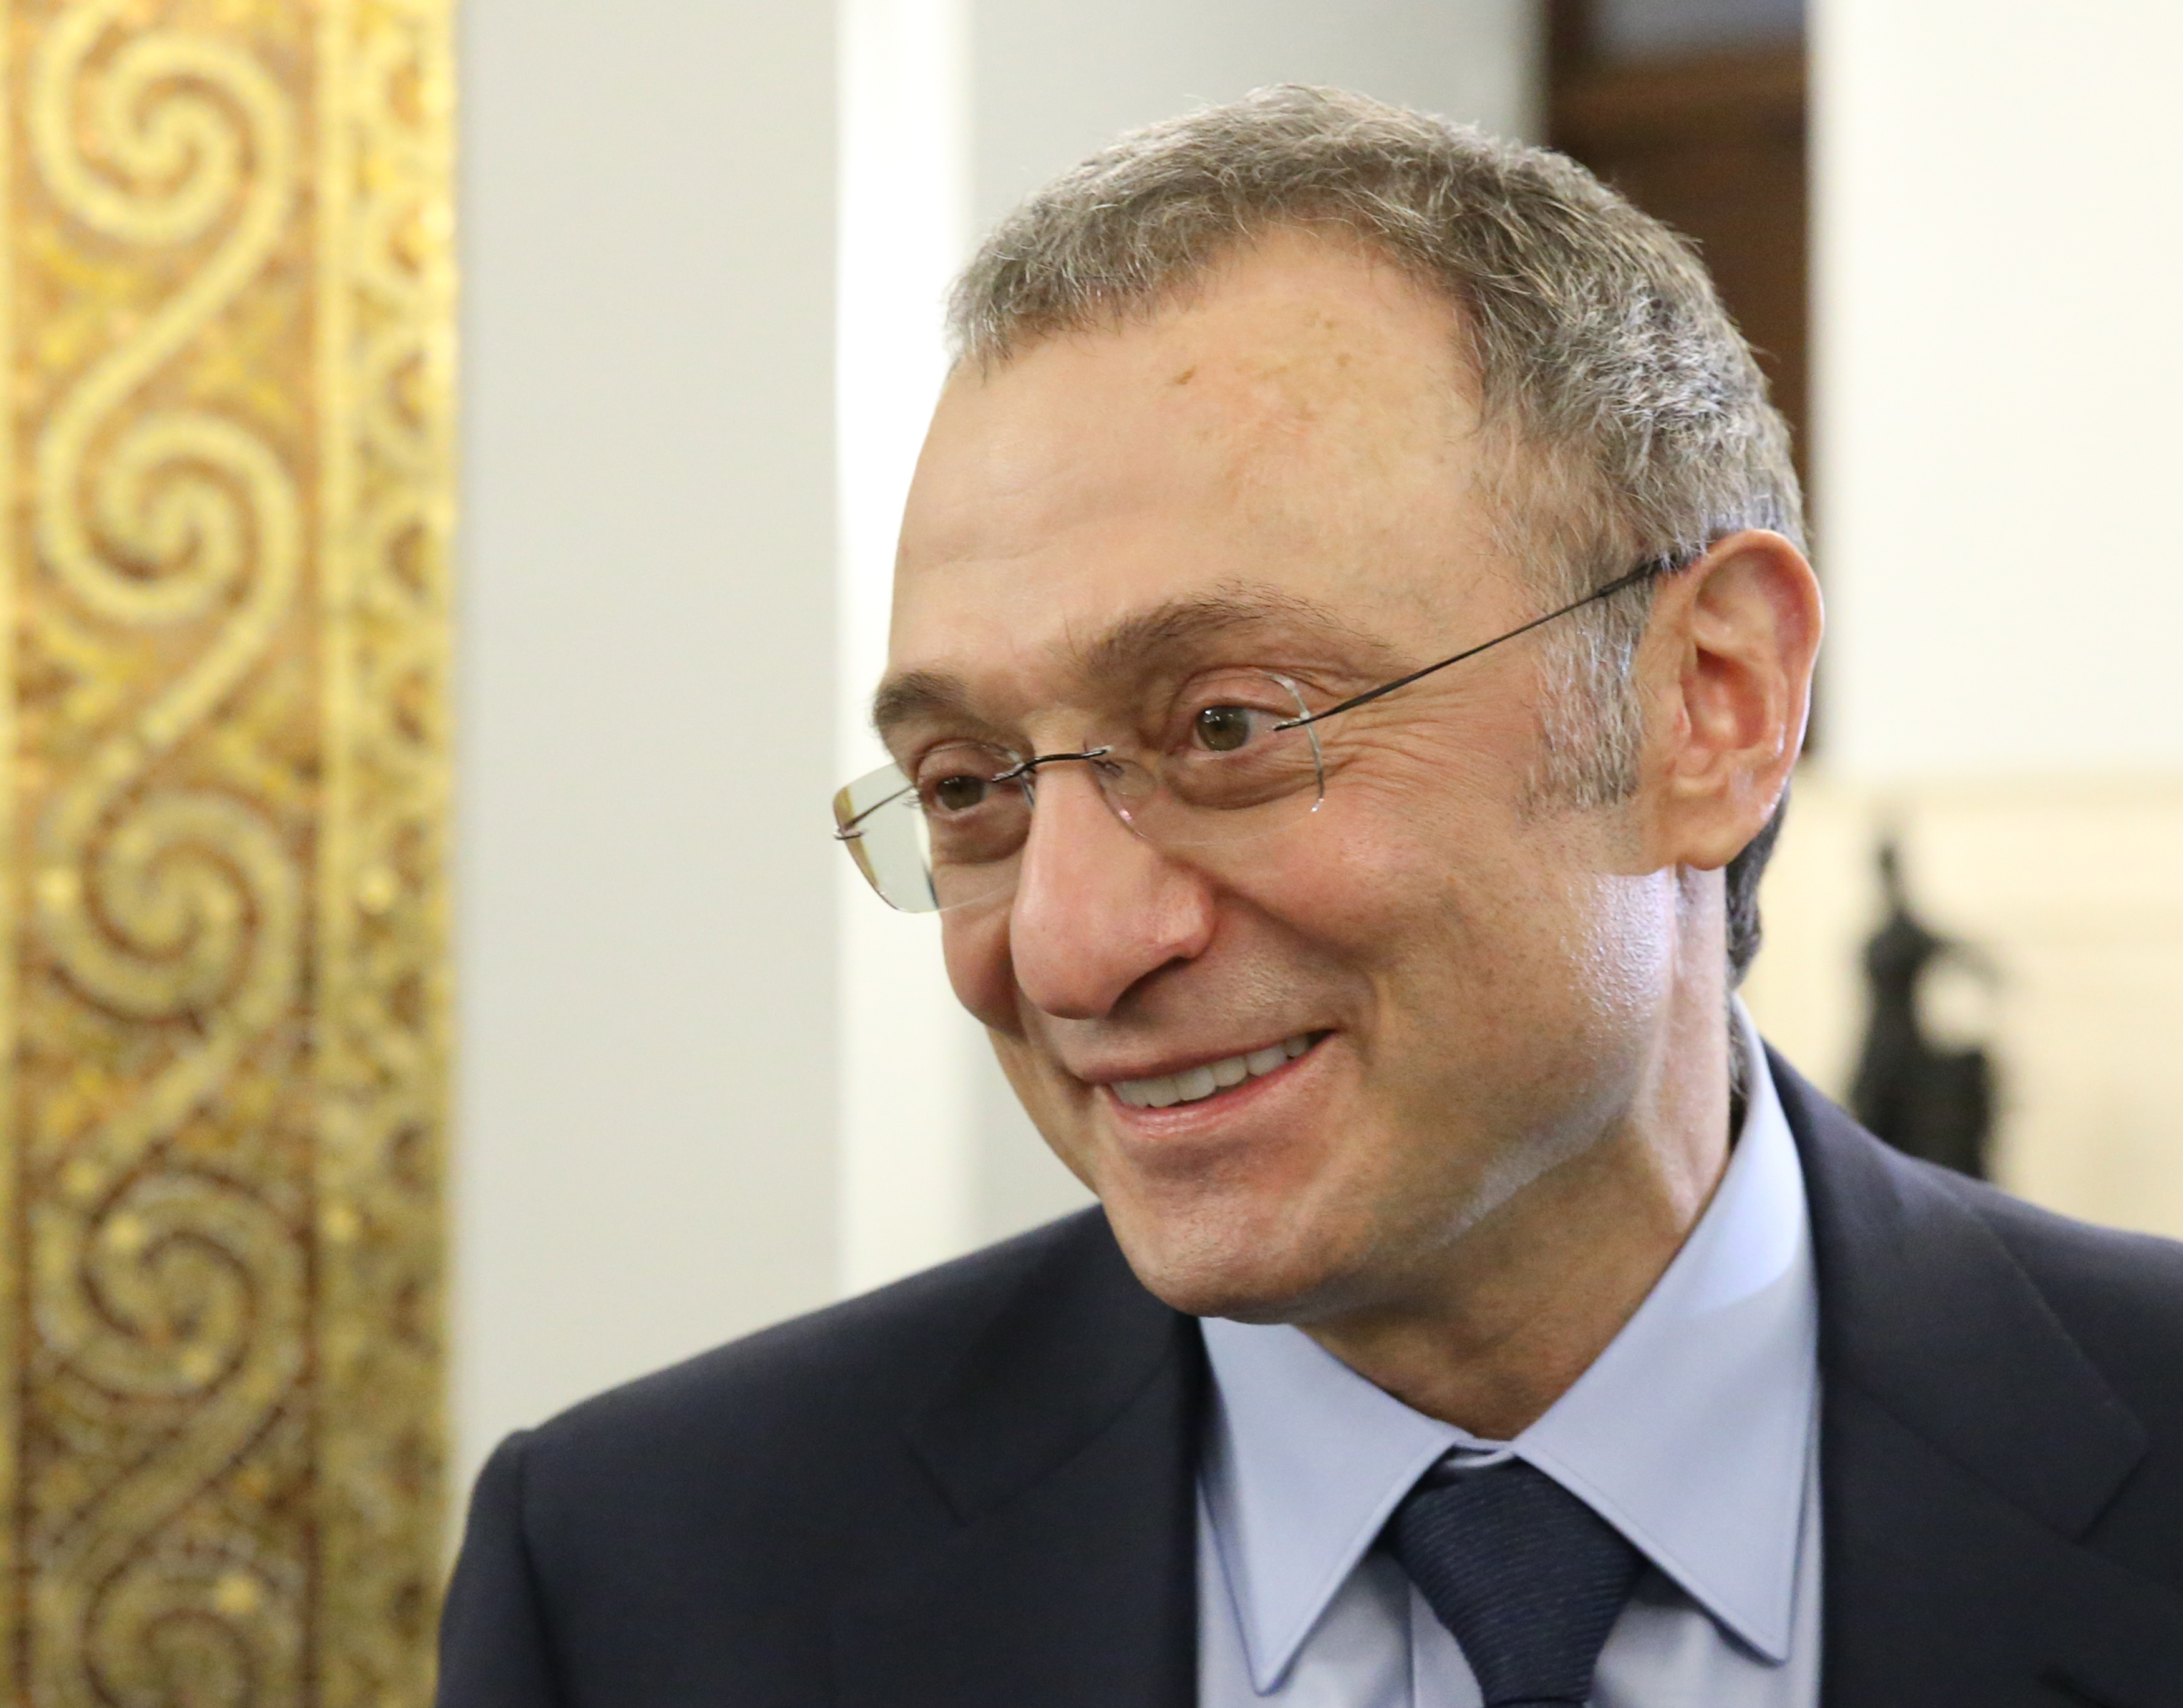 El multimillonario y empresario ruso Suleiman Kerimov, accionista de Gazprom y Sberbank